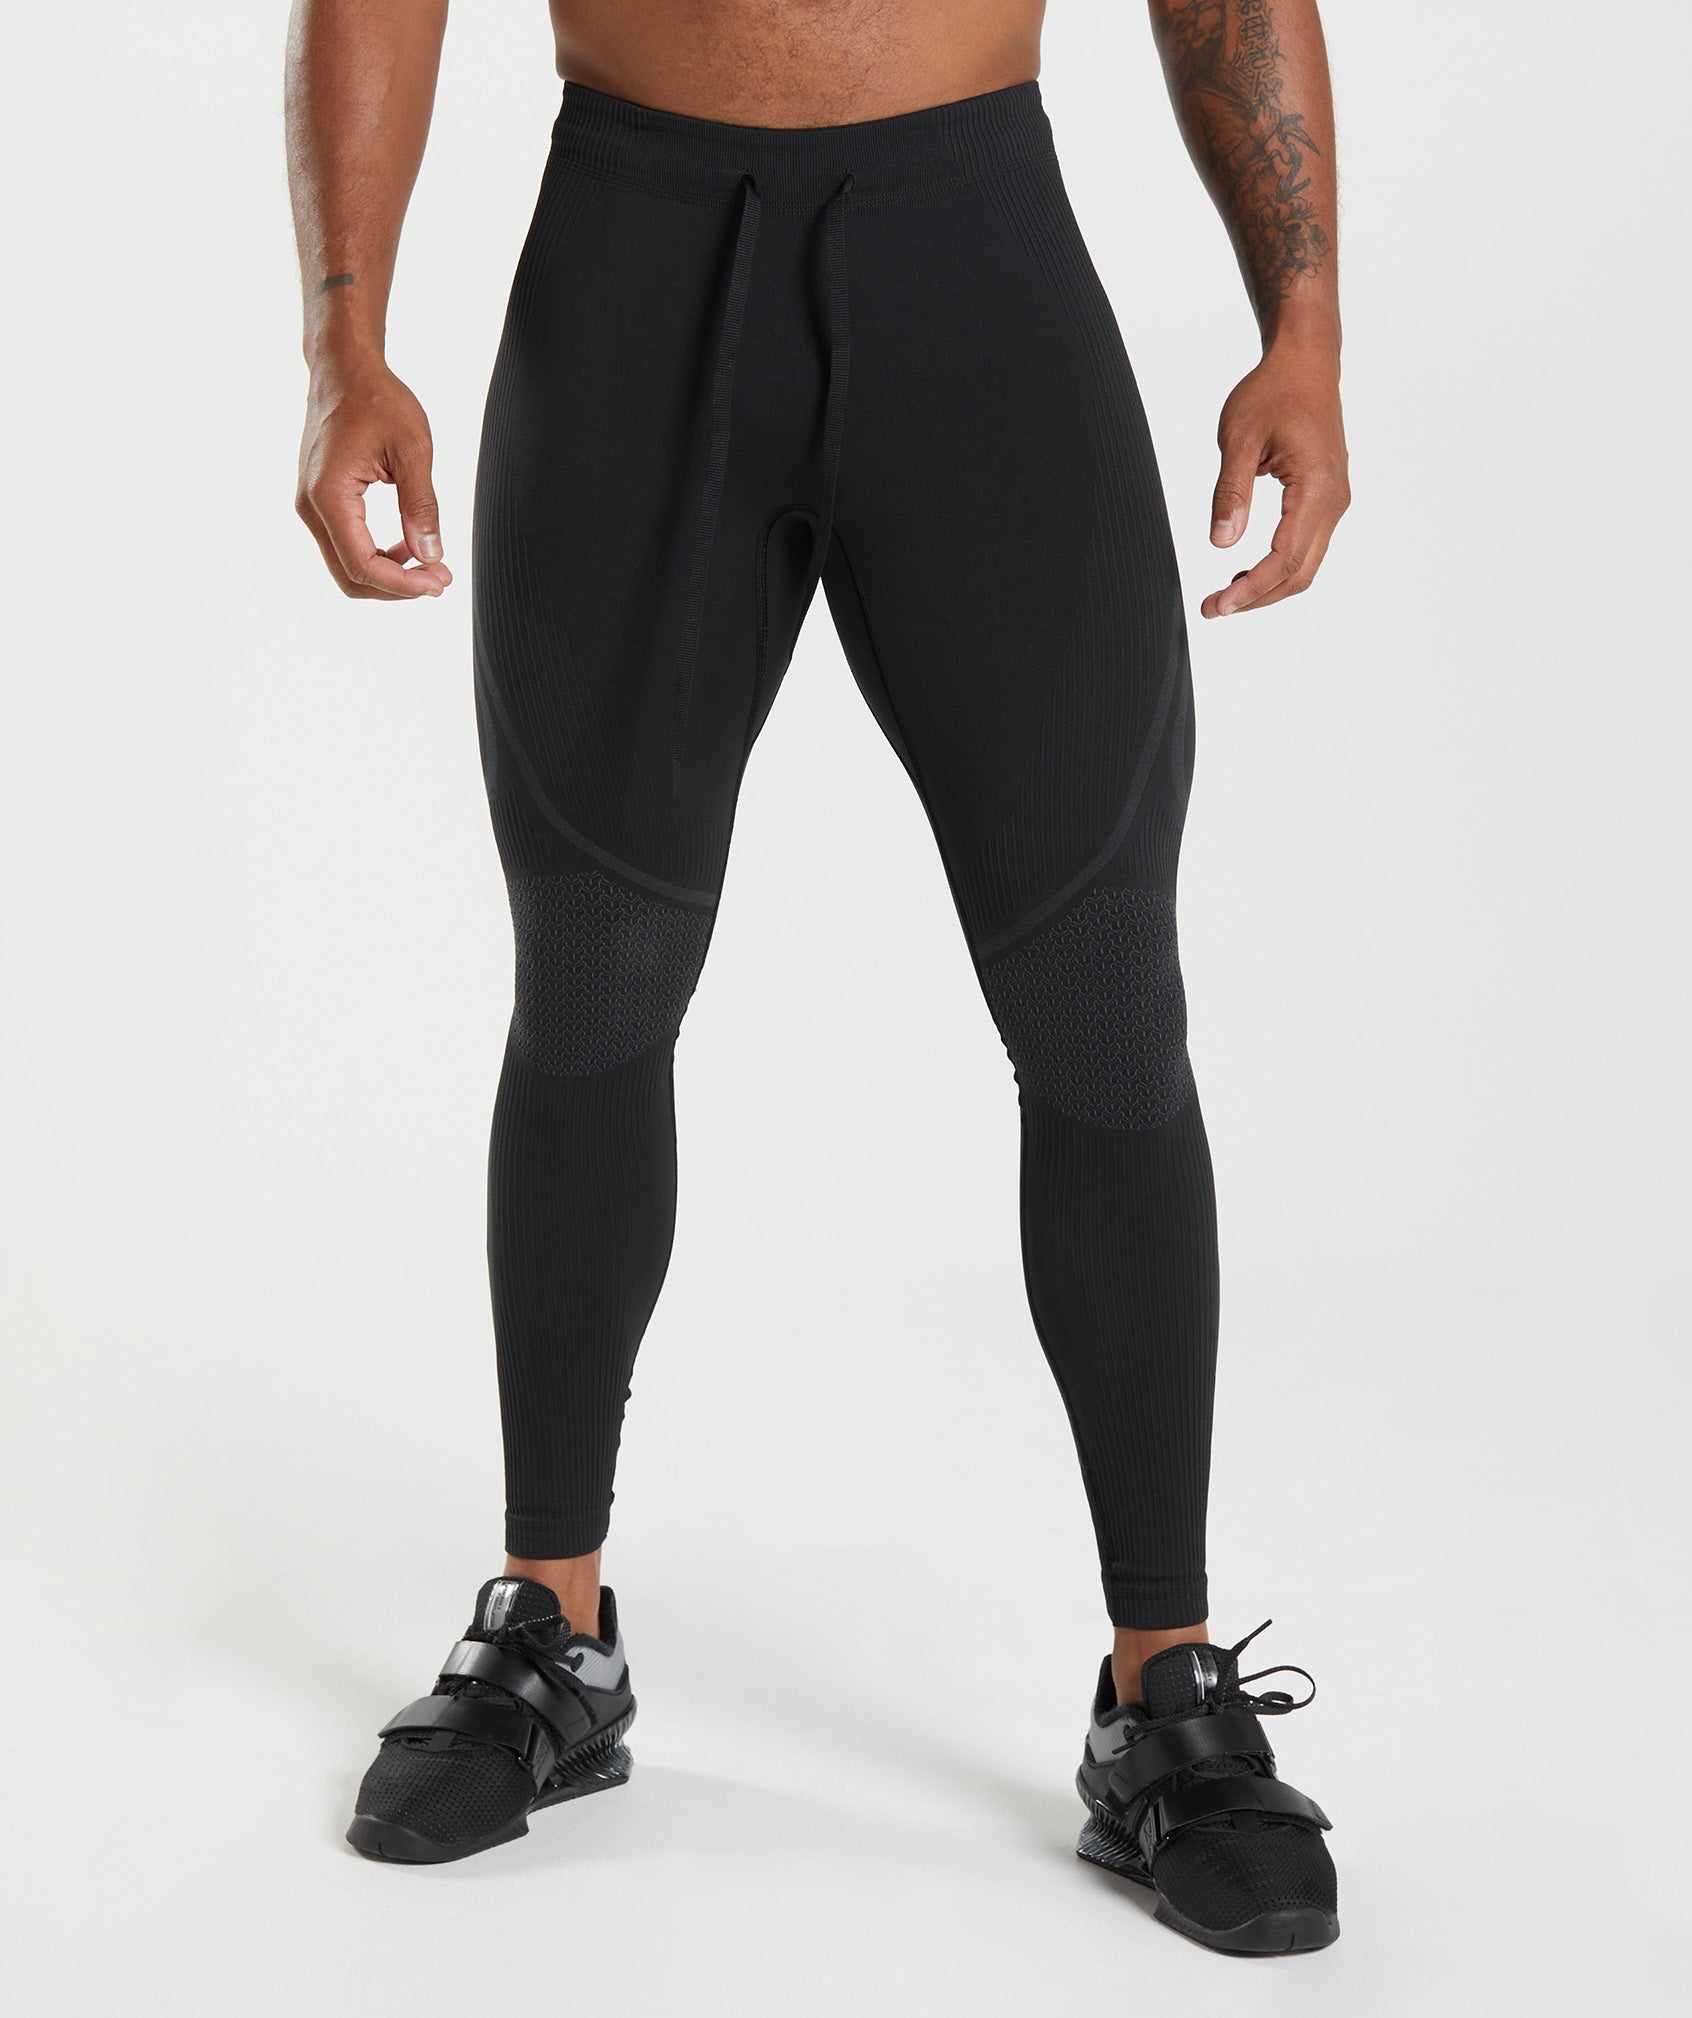 Gymshark Element Baselayer Leggings - Black  Mens workout clothes, Black  leggings, Gymshark